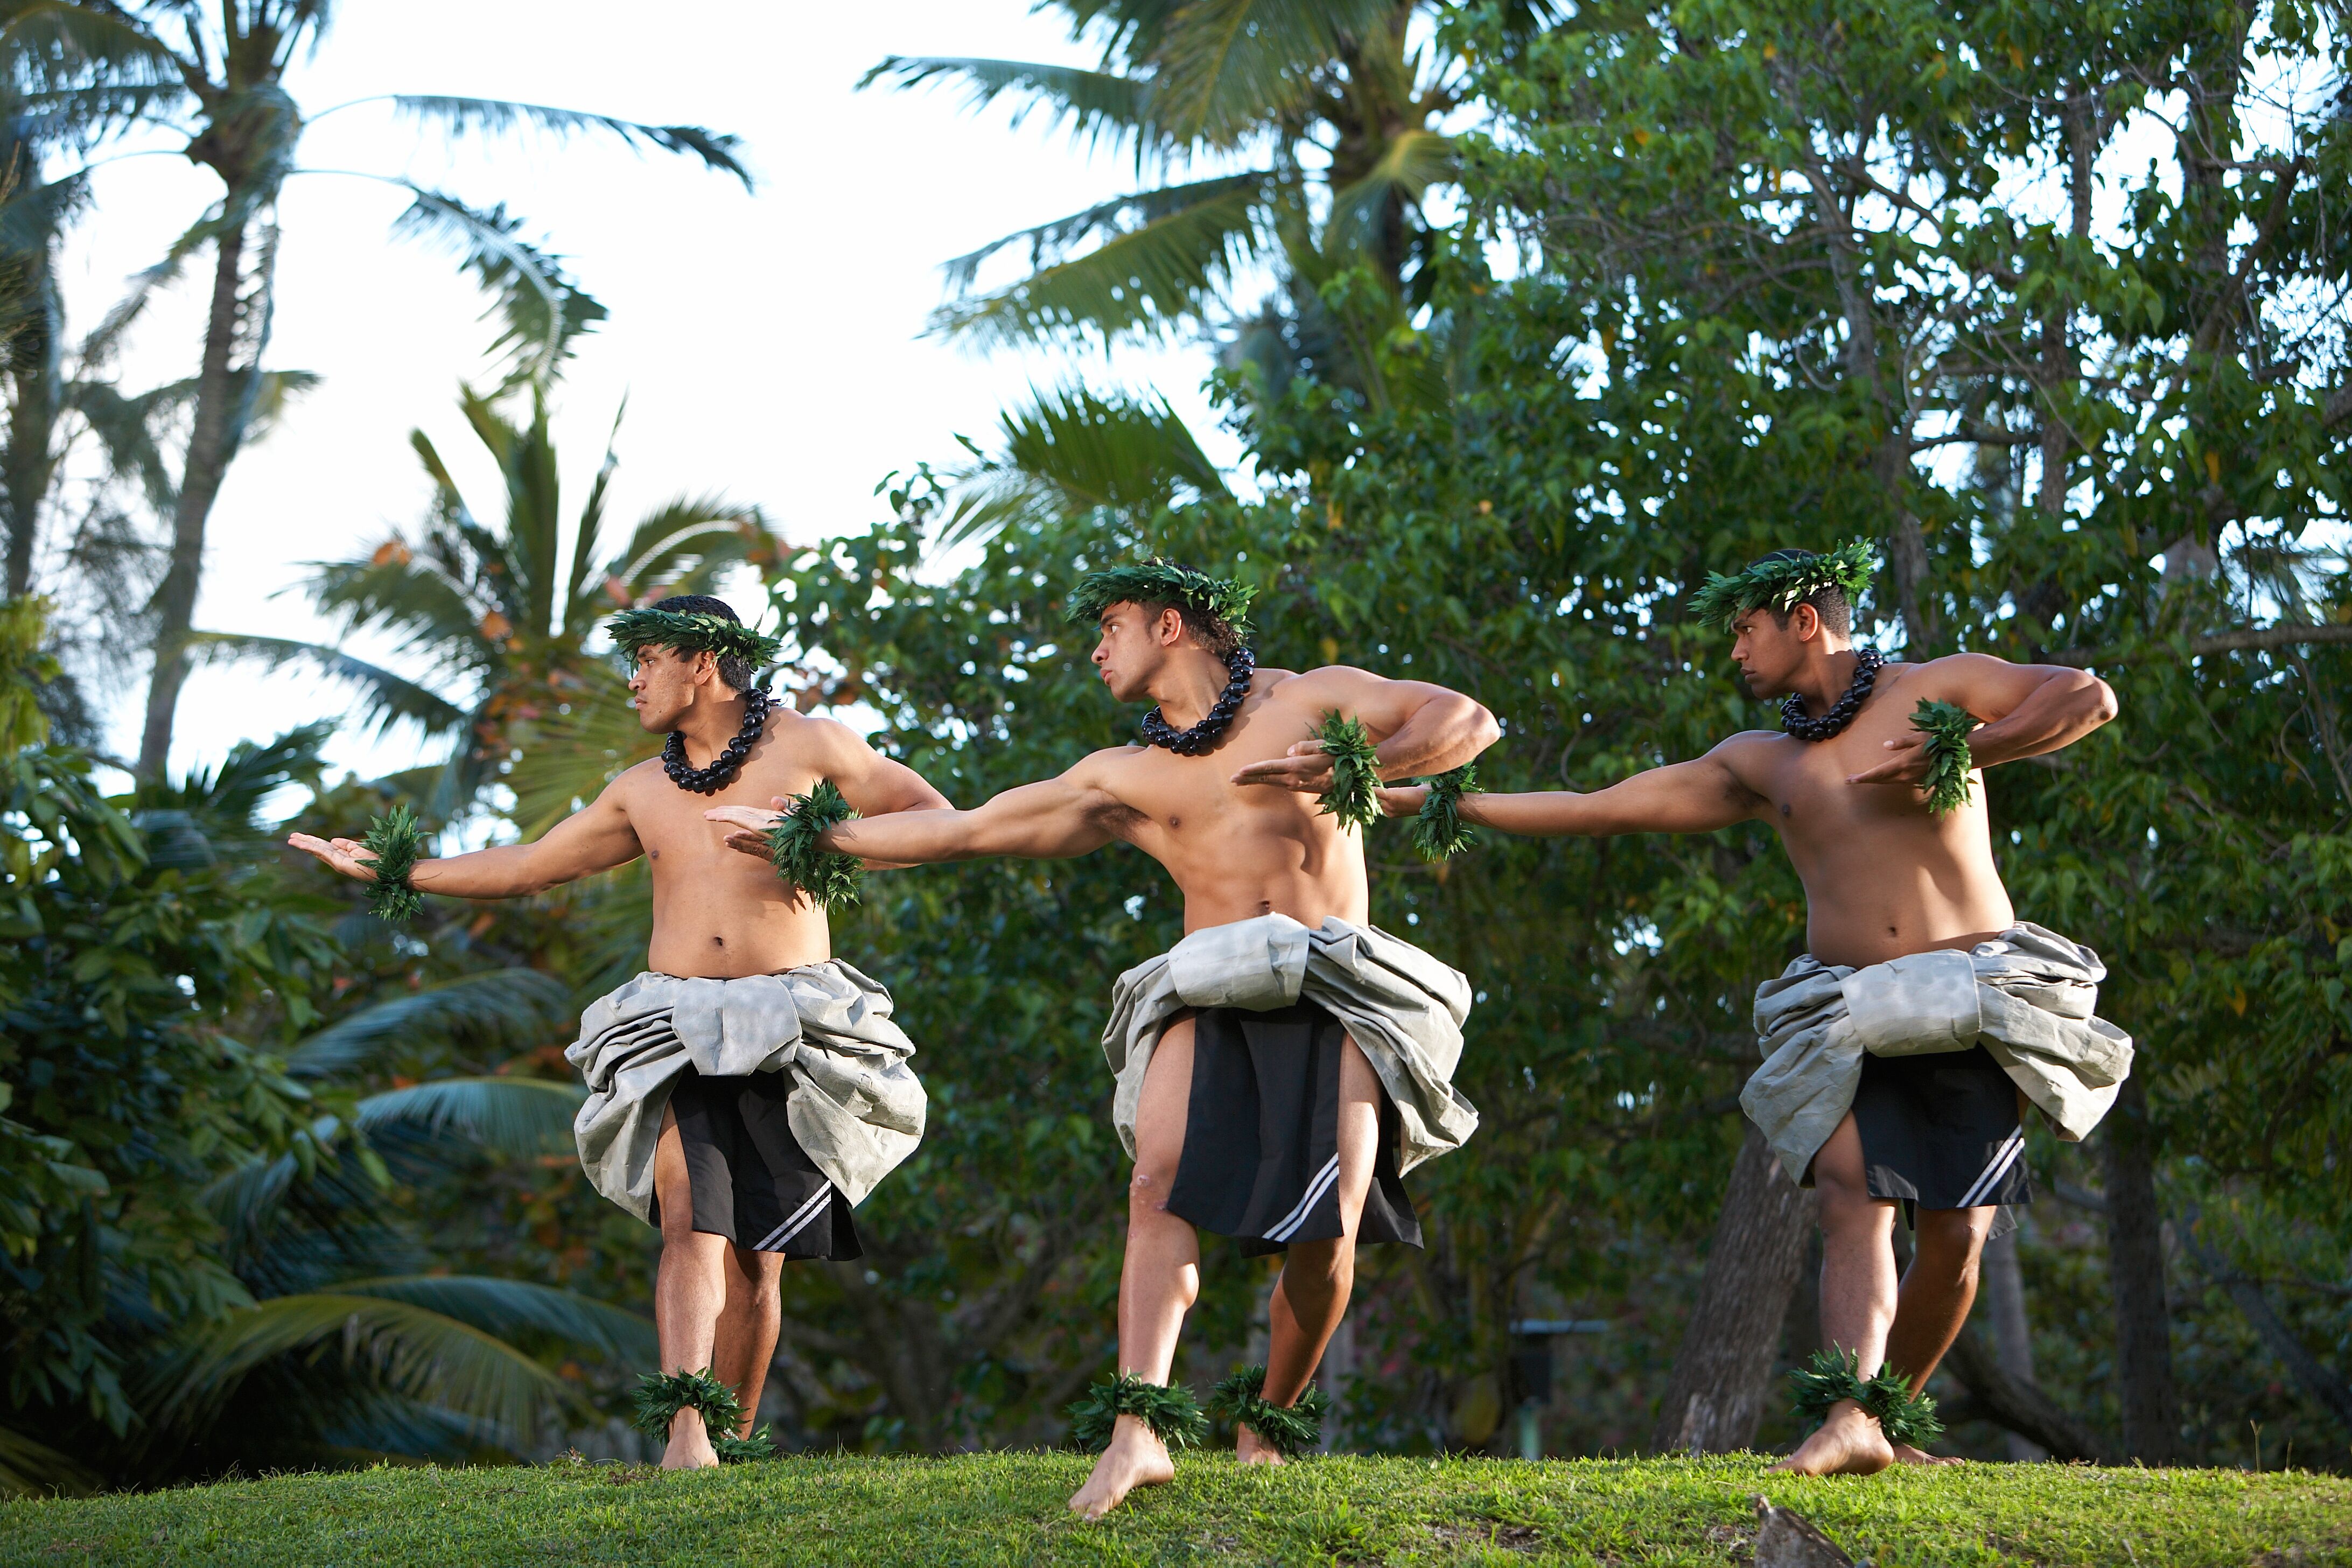 kane (men) performing Hawaiian hula kahiko (ancient hula) at the Polynesian Cultural Center